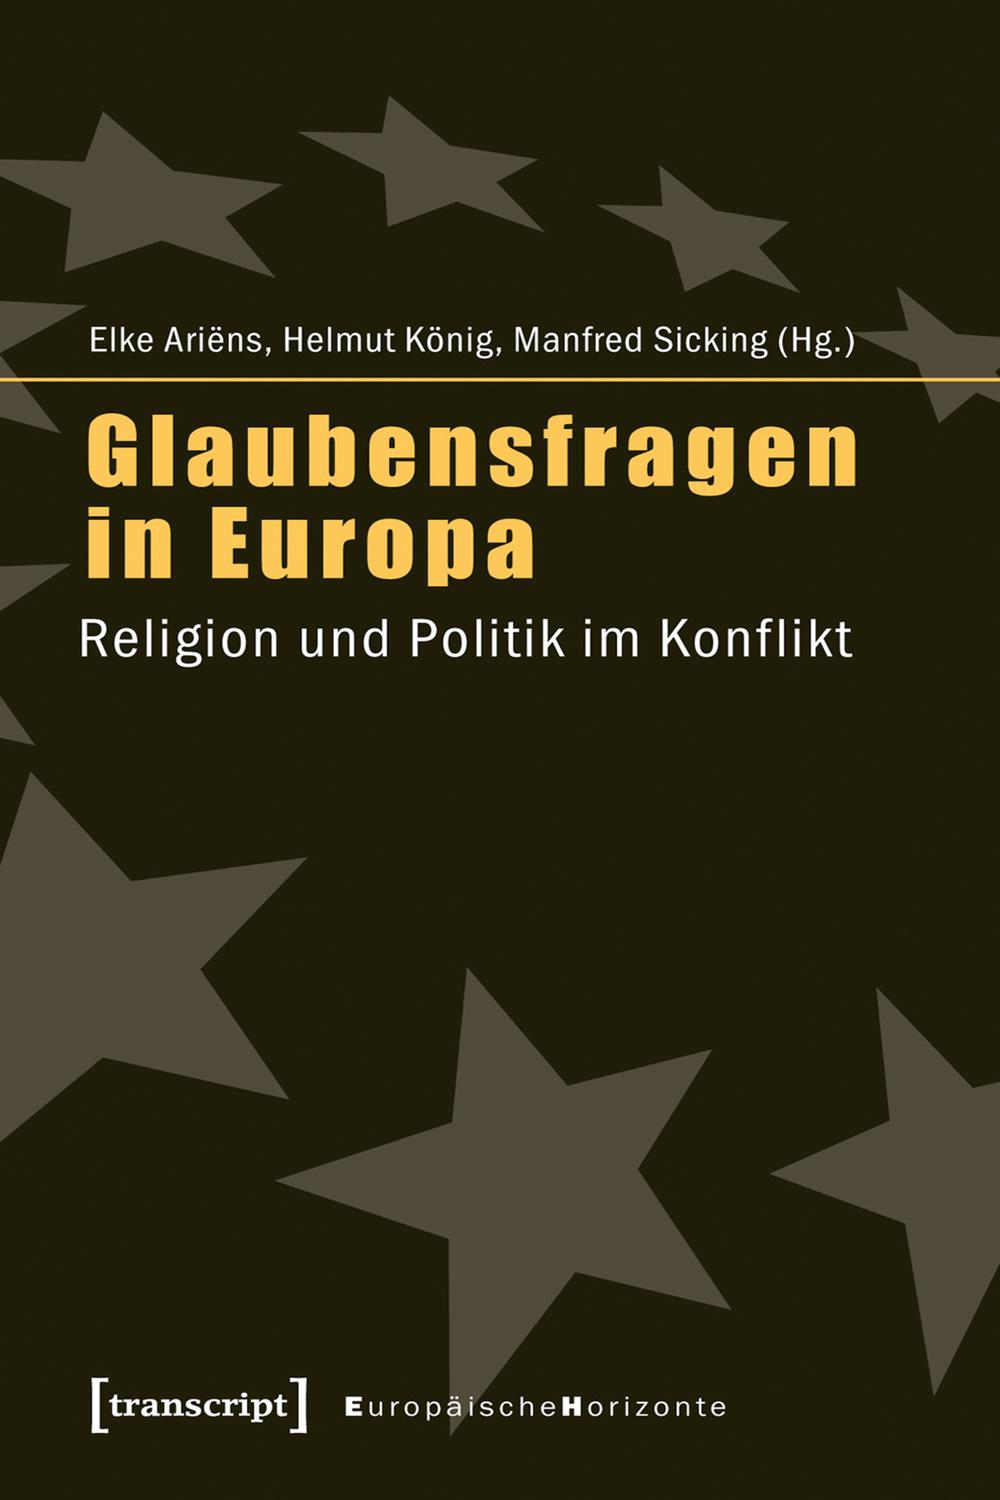 Glaubensfragen in Europa - Elke Ariëns, Helmut König, Manfred Sicking